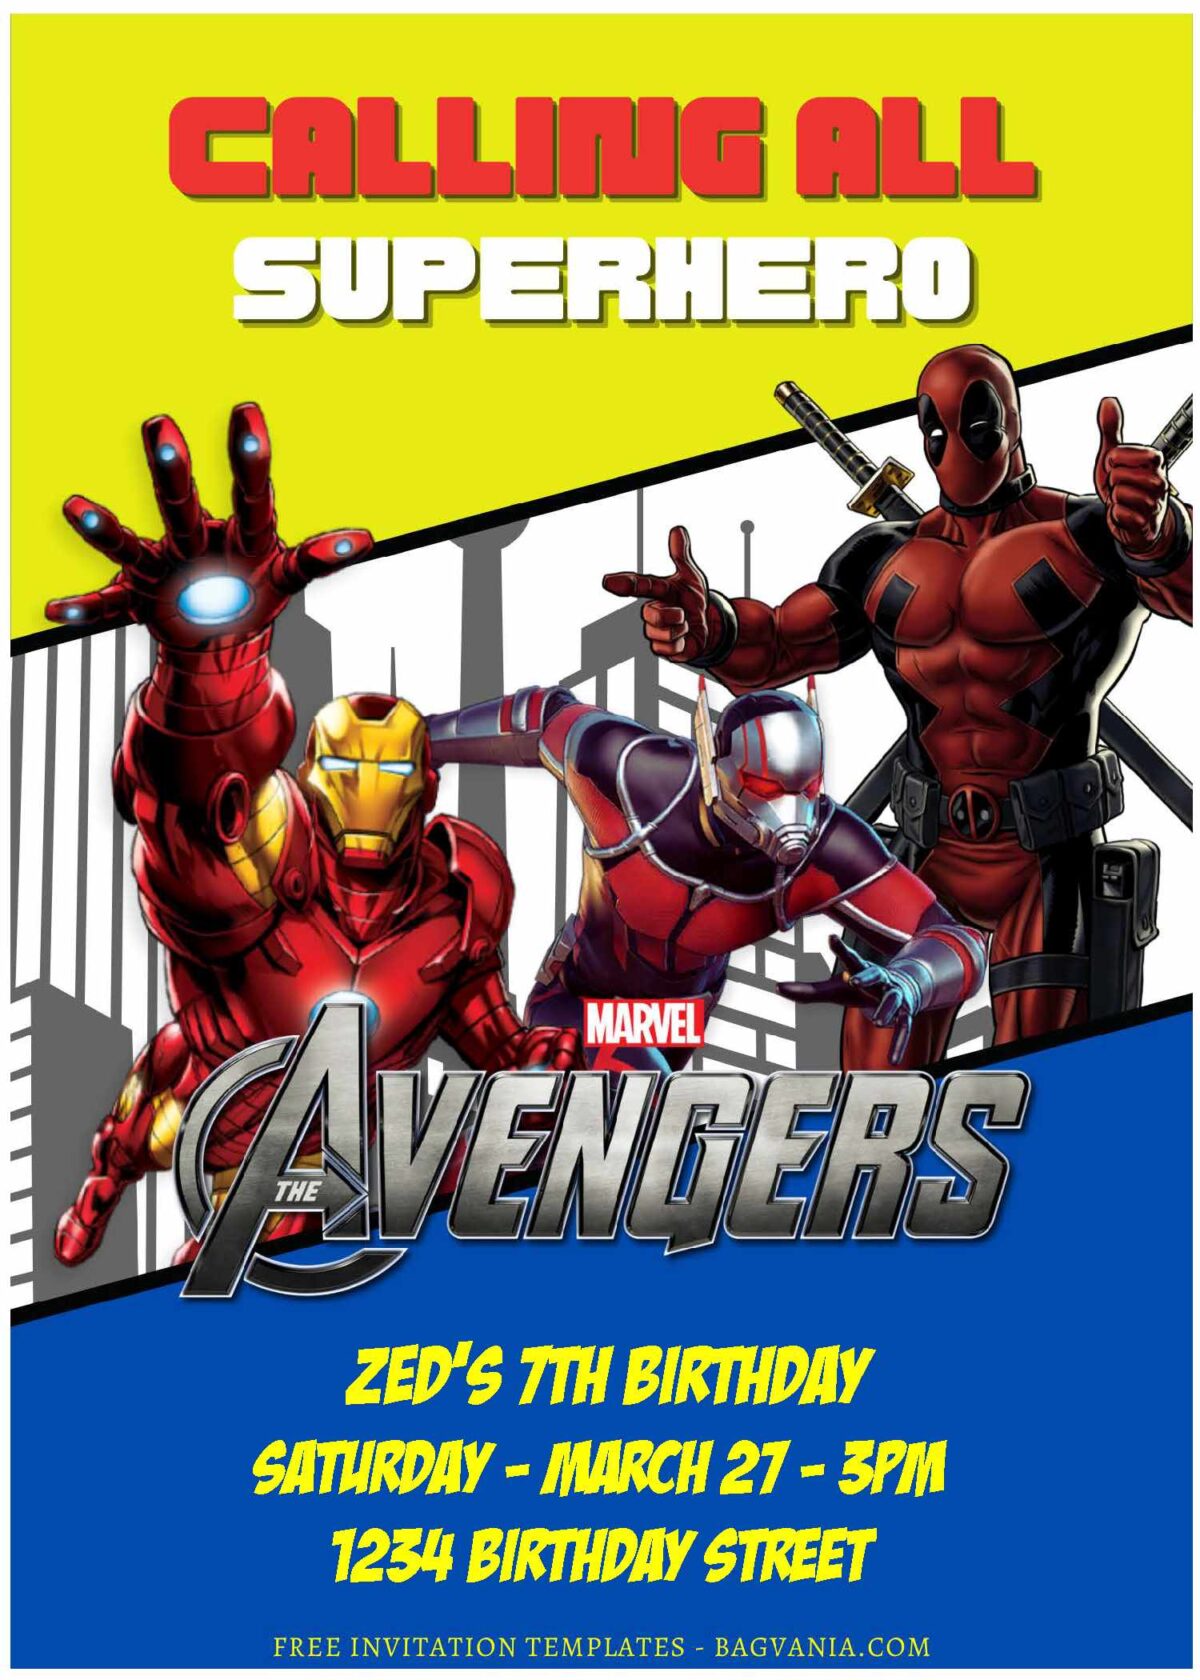 (Free Editable PDF) Marvel Universe Avengers Birthday Invitation Templates F